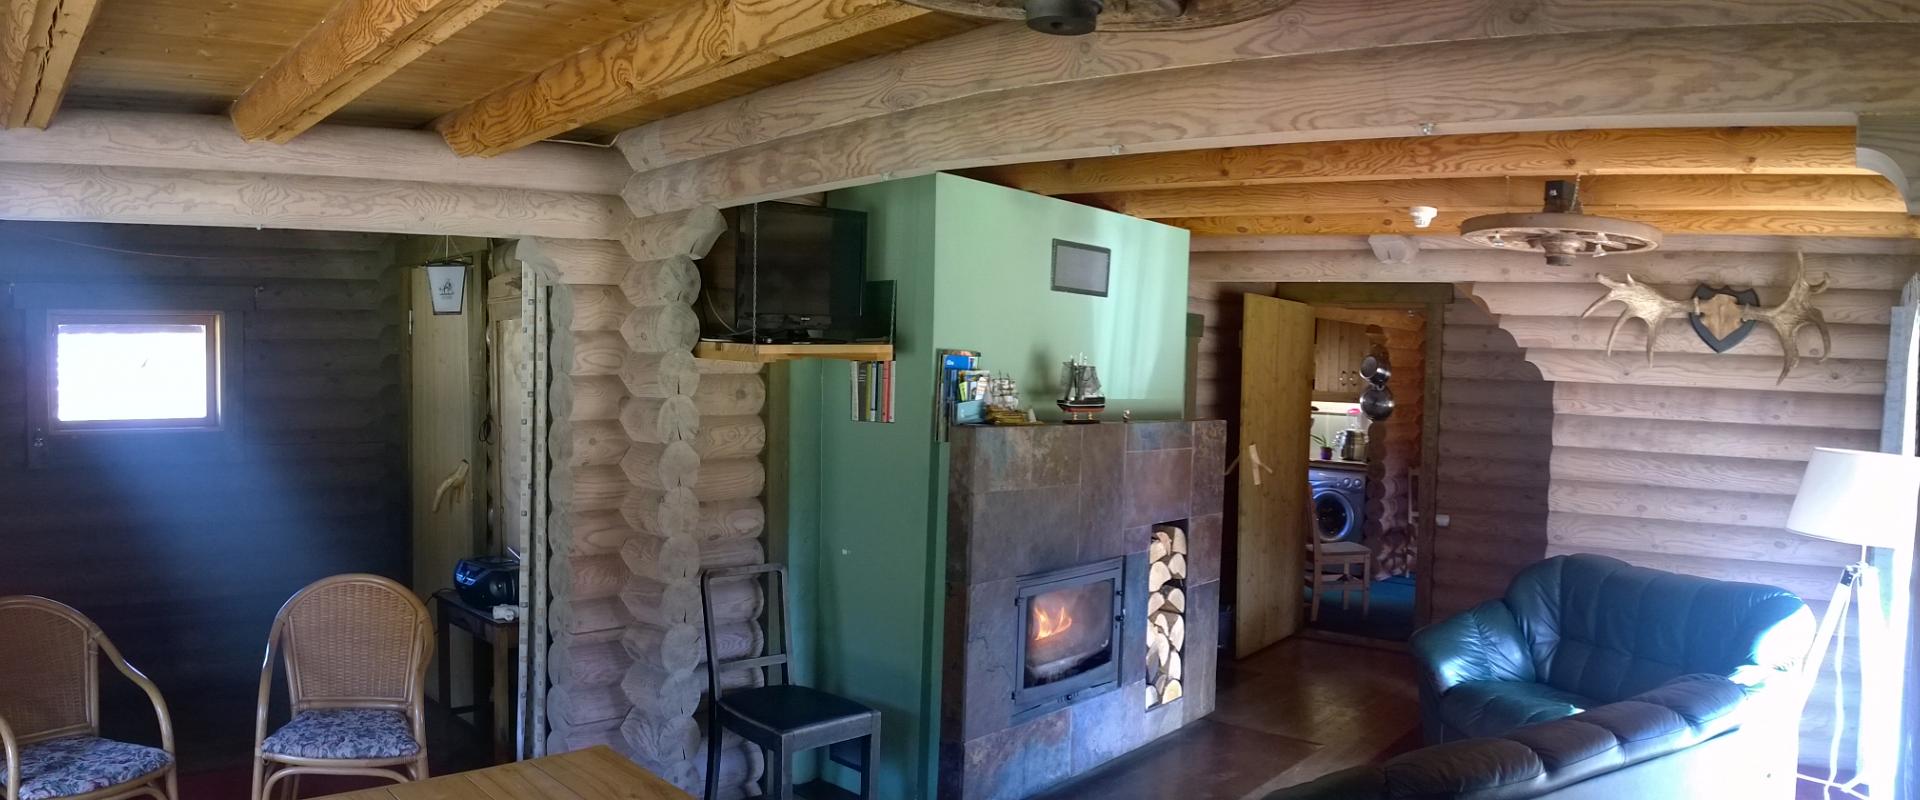 Markna Tourist Farm Sauna House - living-room and a fireplace room.